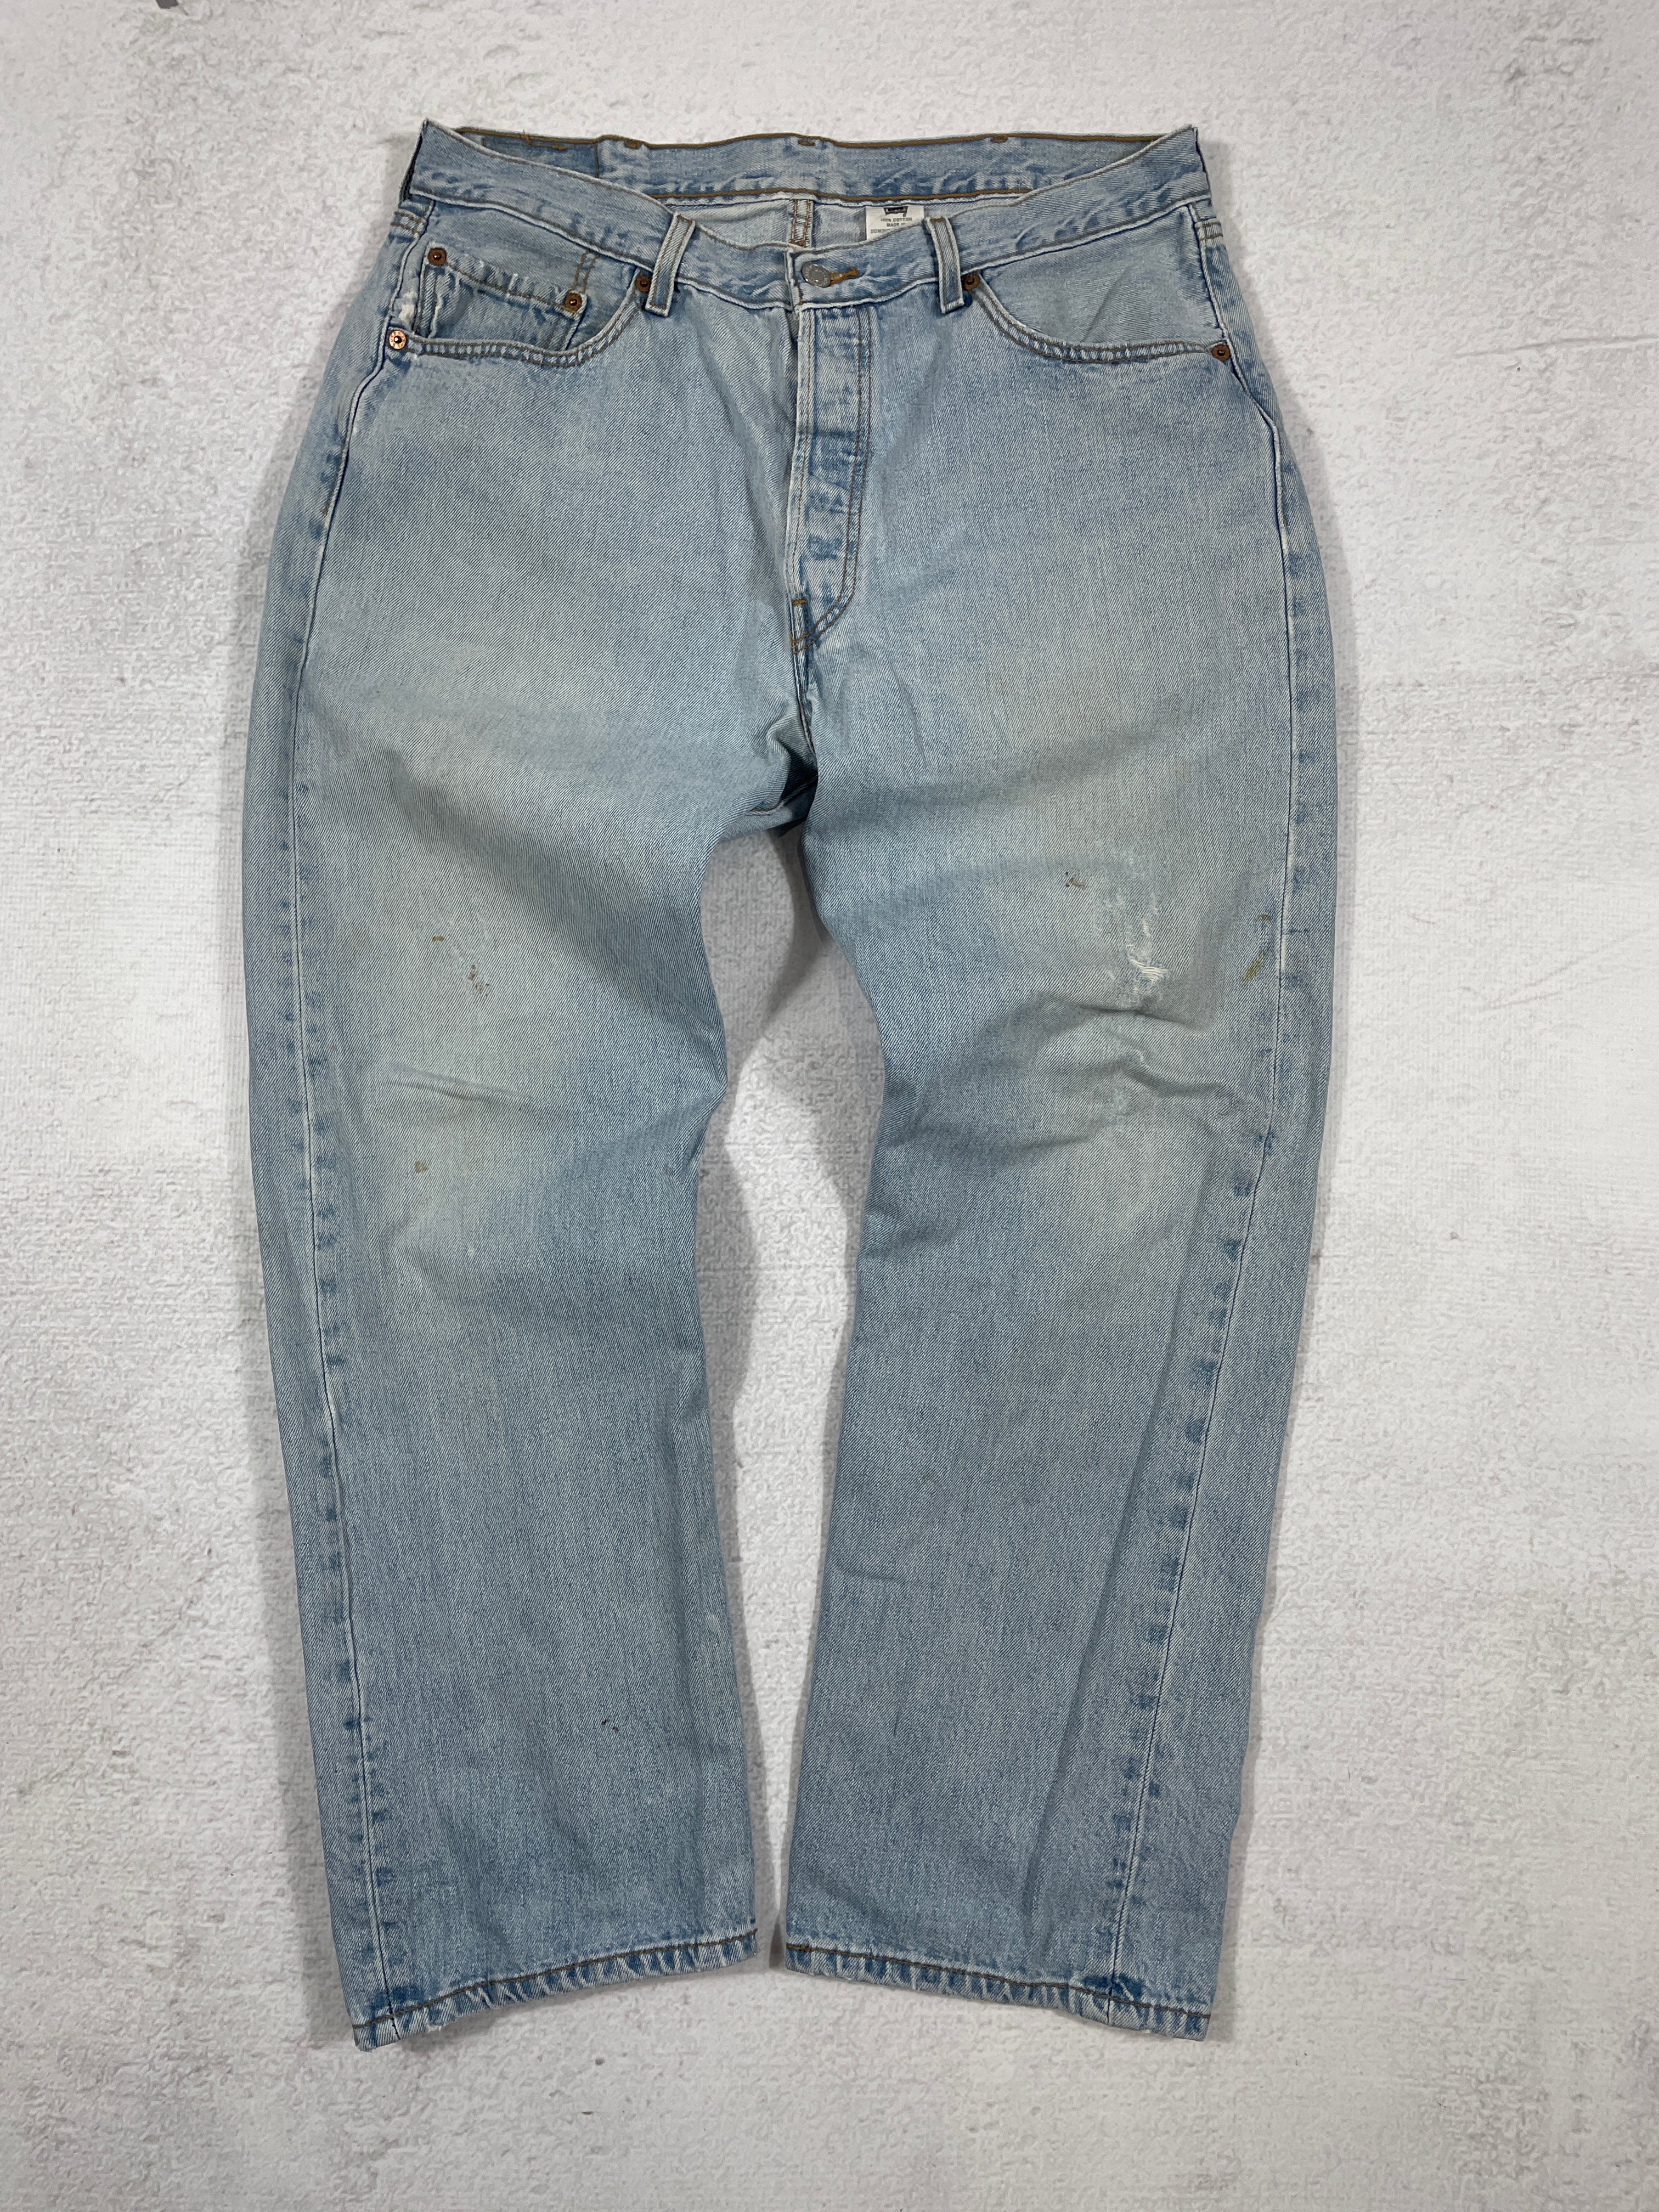 Vintage Levis 501 Jeans - 38Wx32L